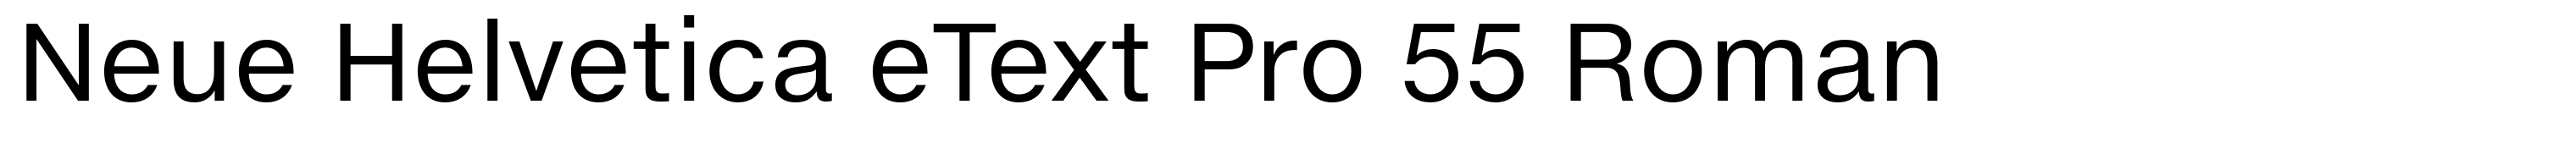 Neue Helvetica eText Pro 55 Roman